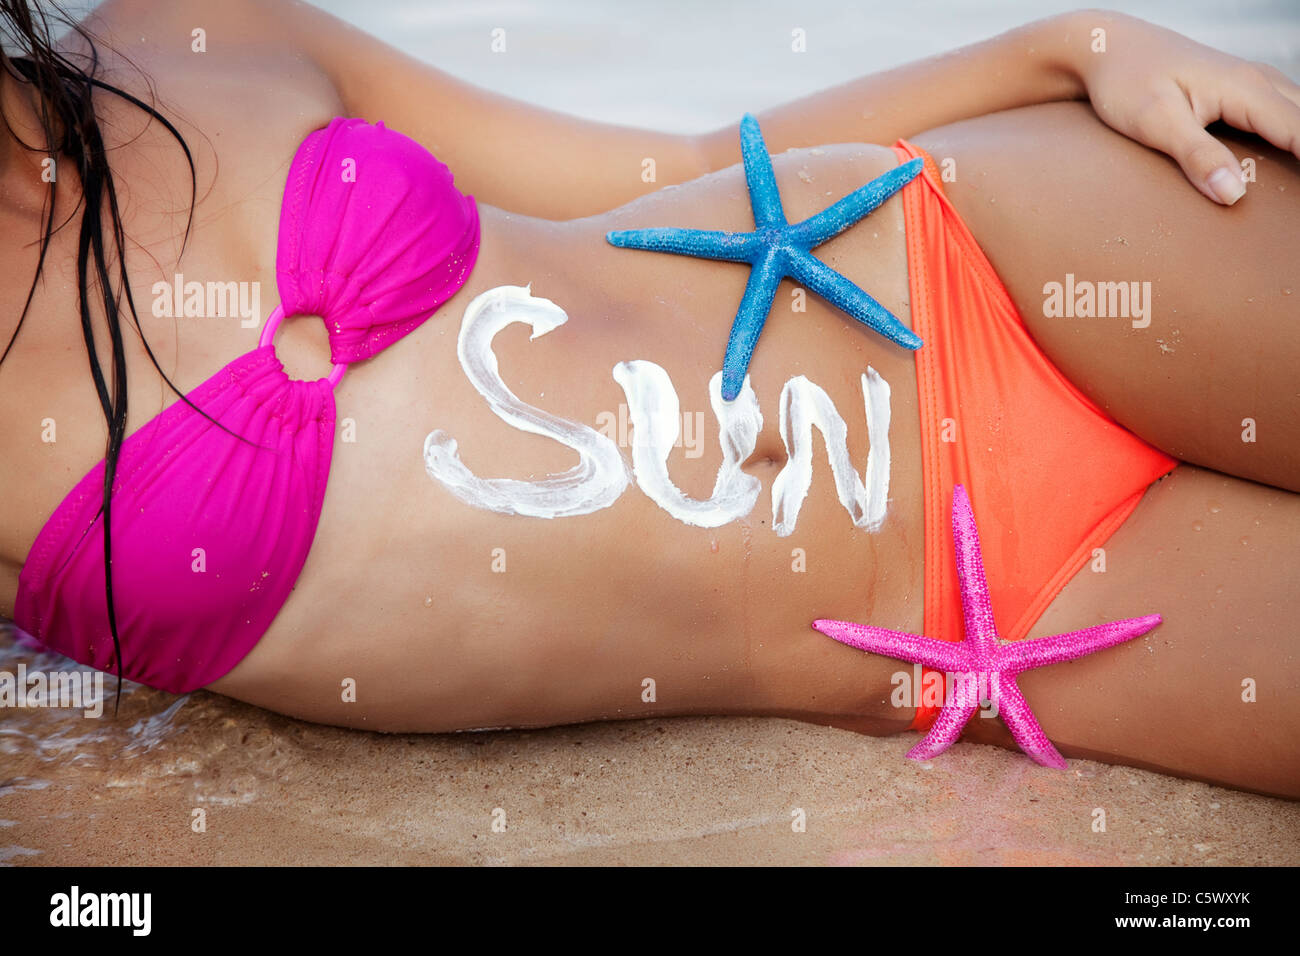 Parte de las mujeres del sol, la palabra 'sol' está escrito con parasol Foto de stock